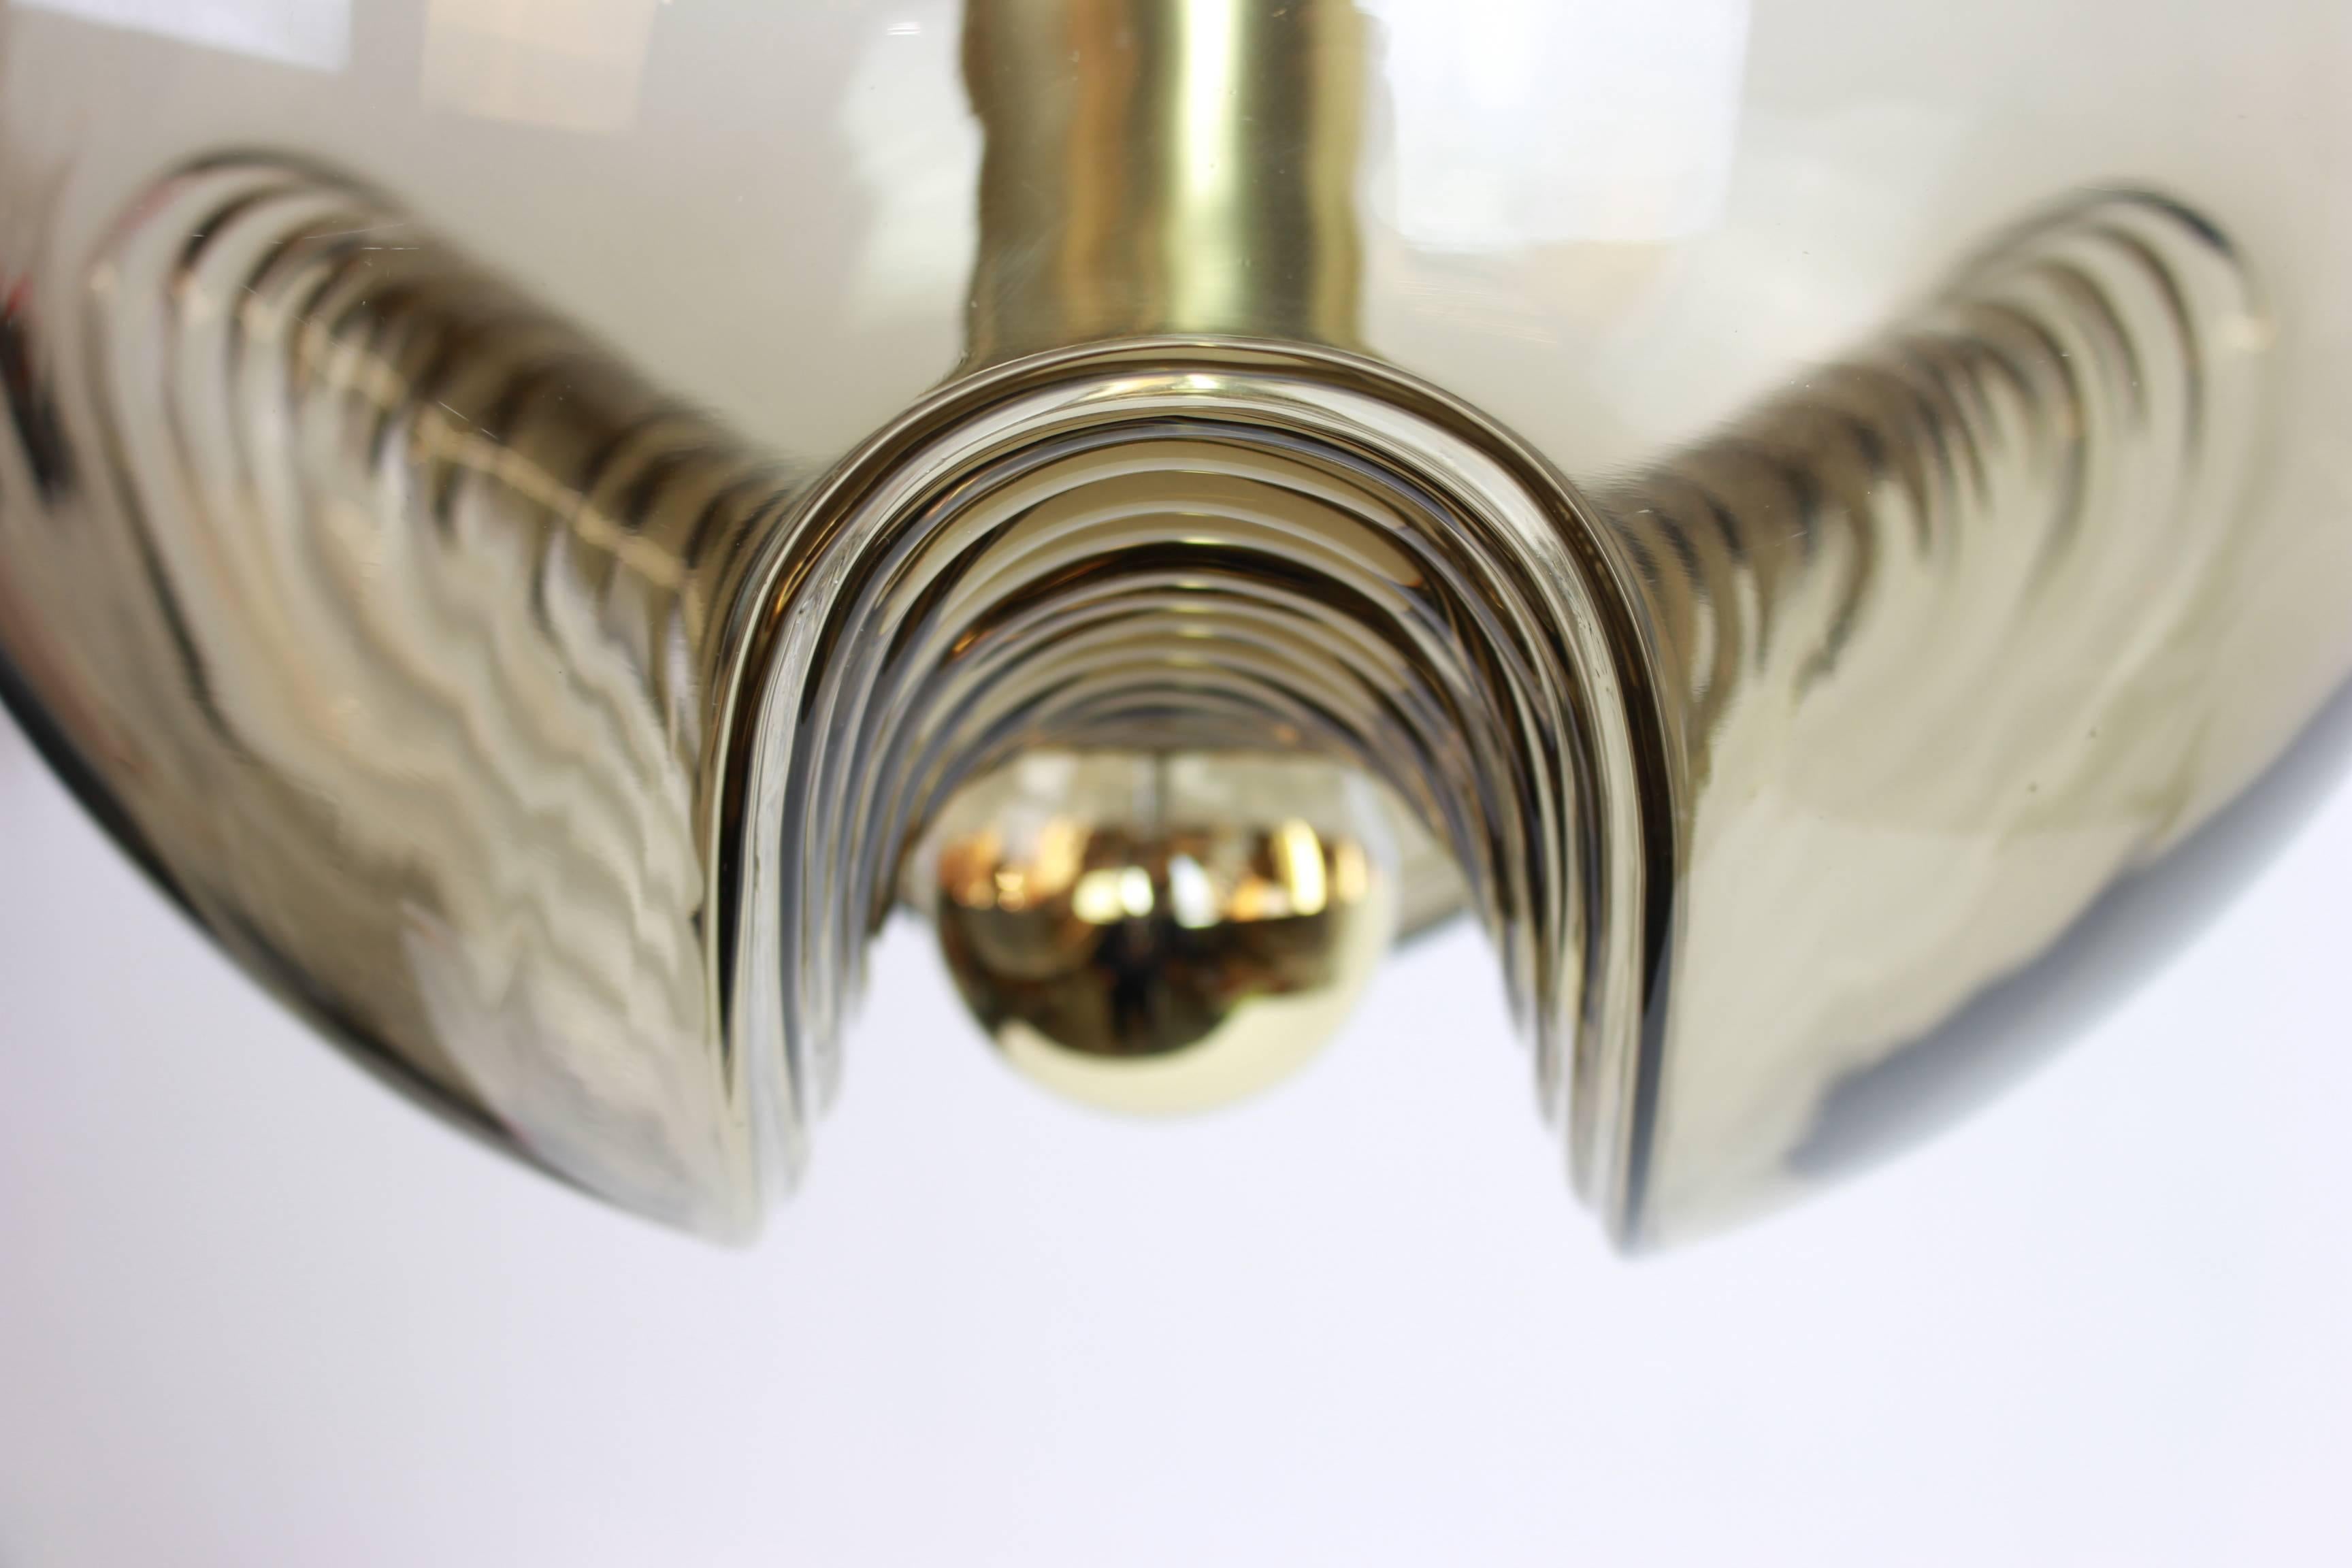 Un pendentif rond spécial en verre fumé biomorphe conçu par Koch & Lowy pour Peill & Putzler, fabriqué en Allemagne, vers les années 1970.

Douilles : 1 x ampoule standard E27. (100 W max).
Les ampoules ne sont pas incluses. Il est possible